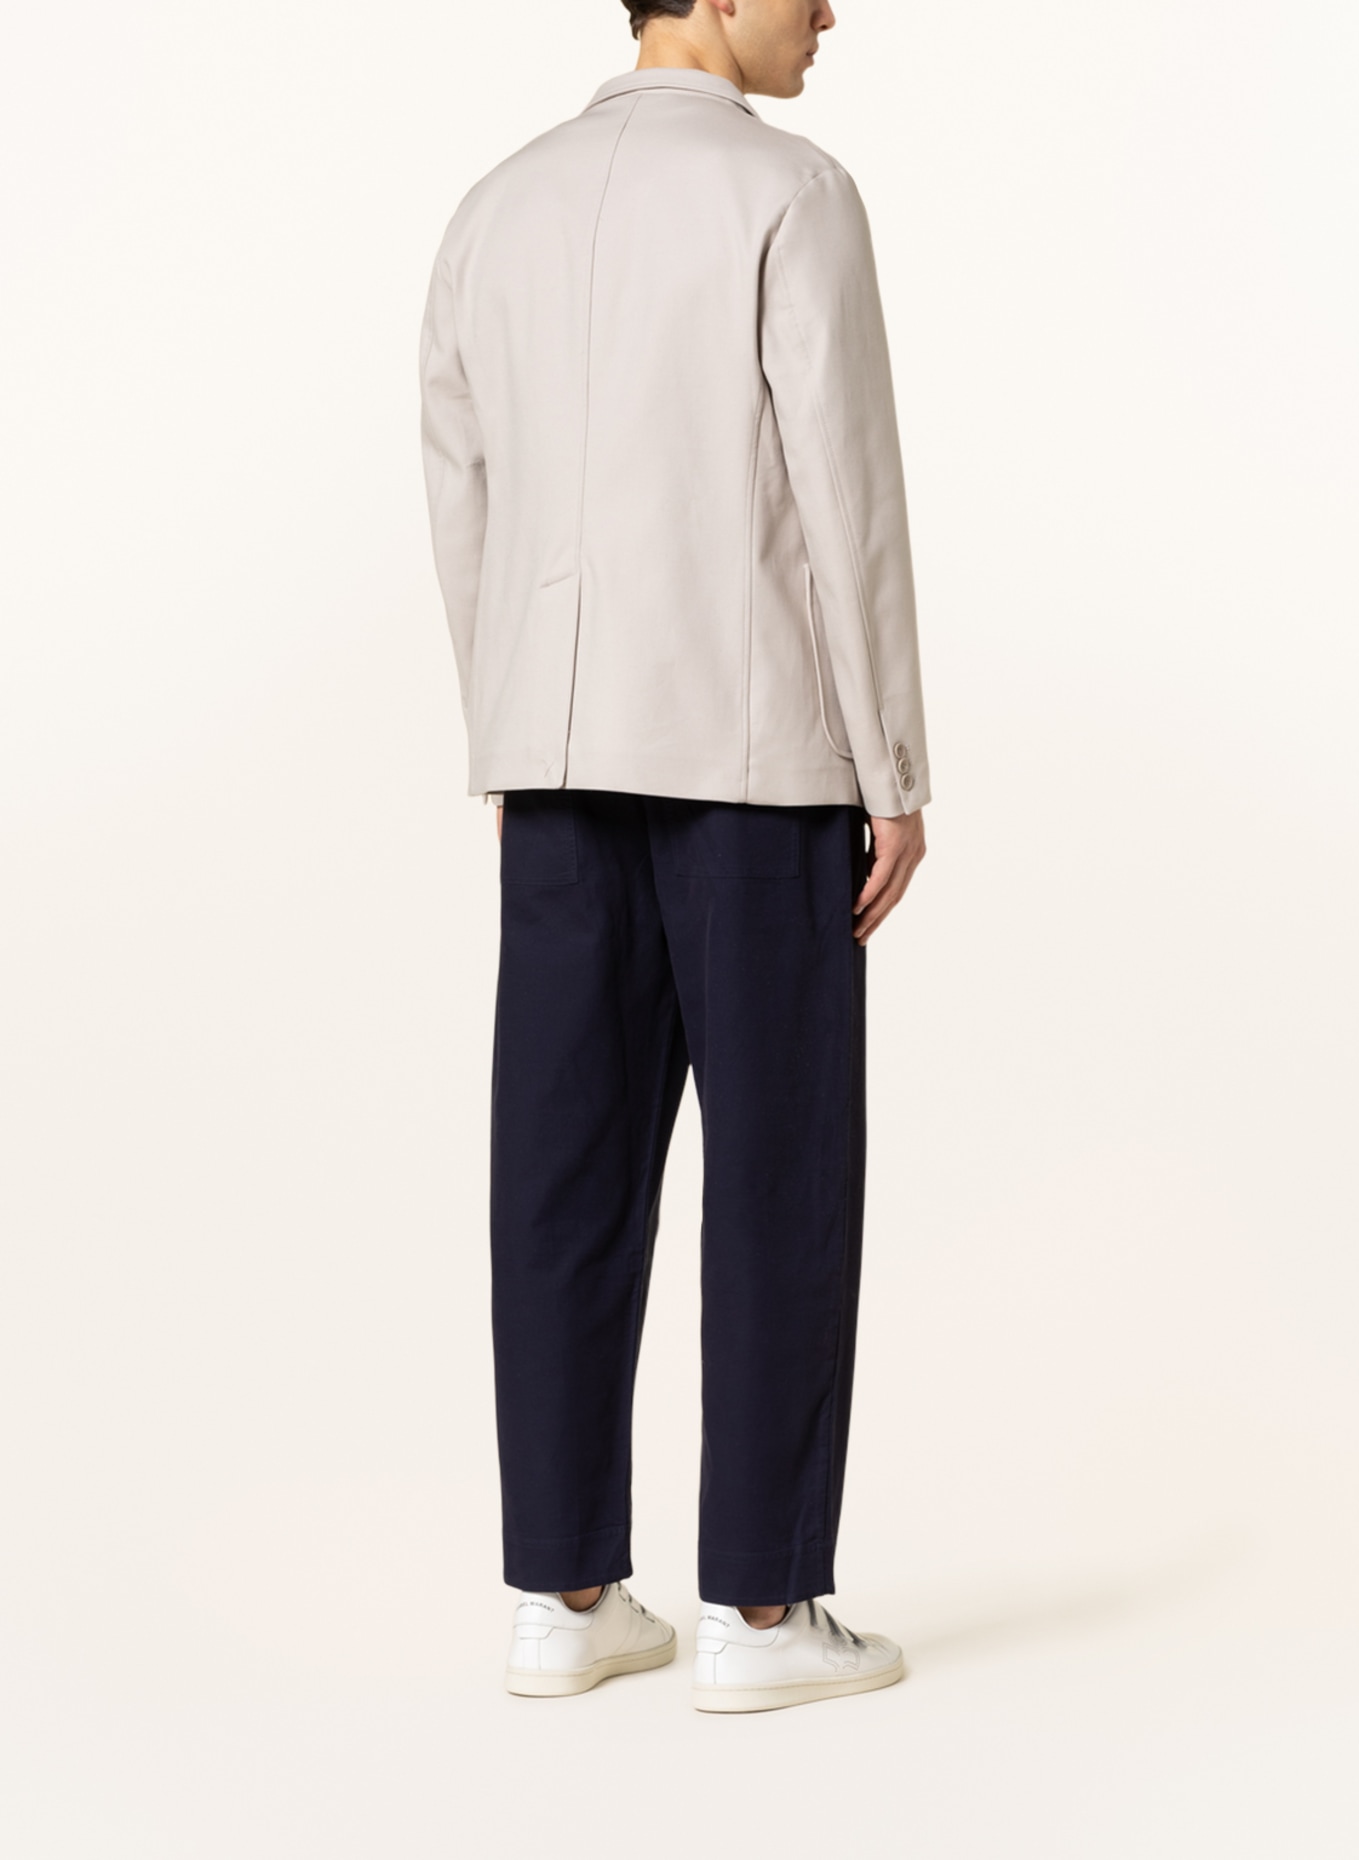 COS Tailored jacket regular fit, Color: BEIGE (Image 3)